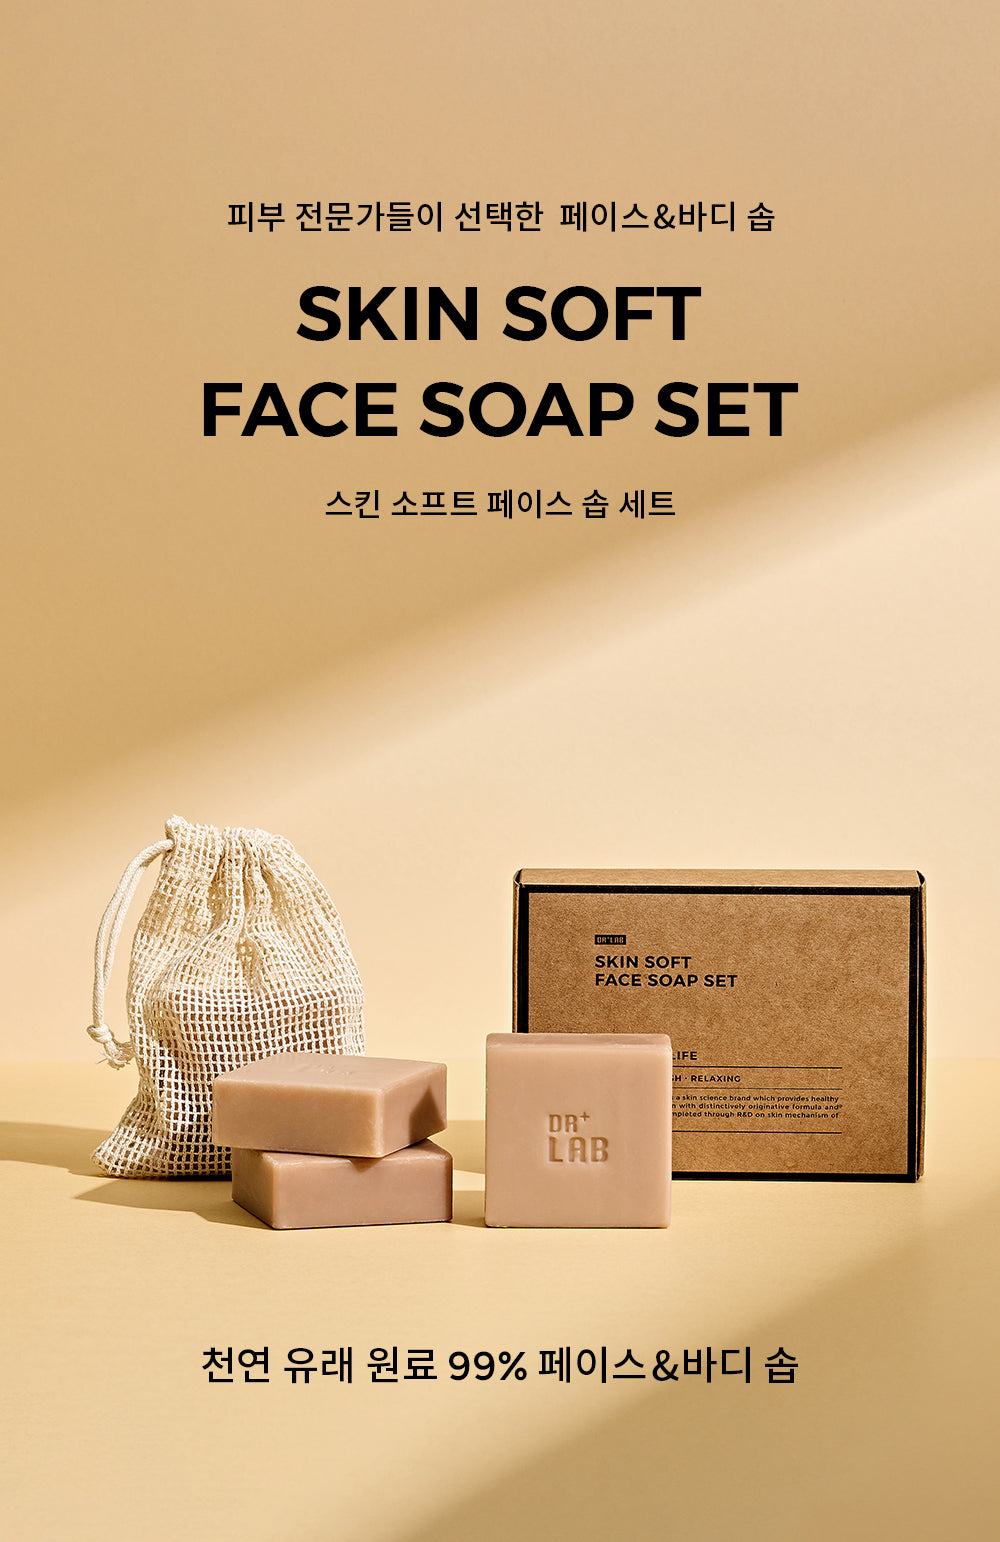 SKIN SOFT FACE SOAP SET